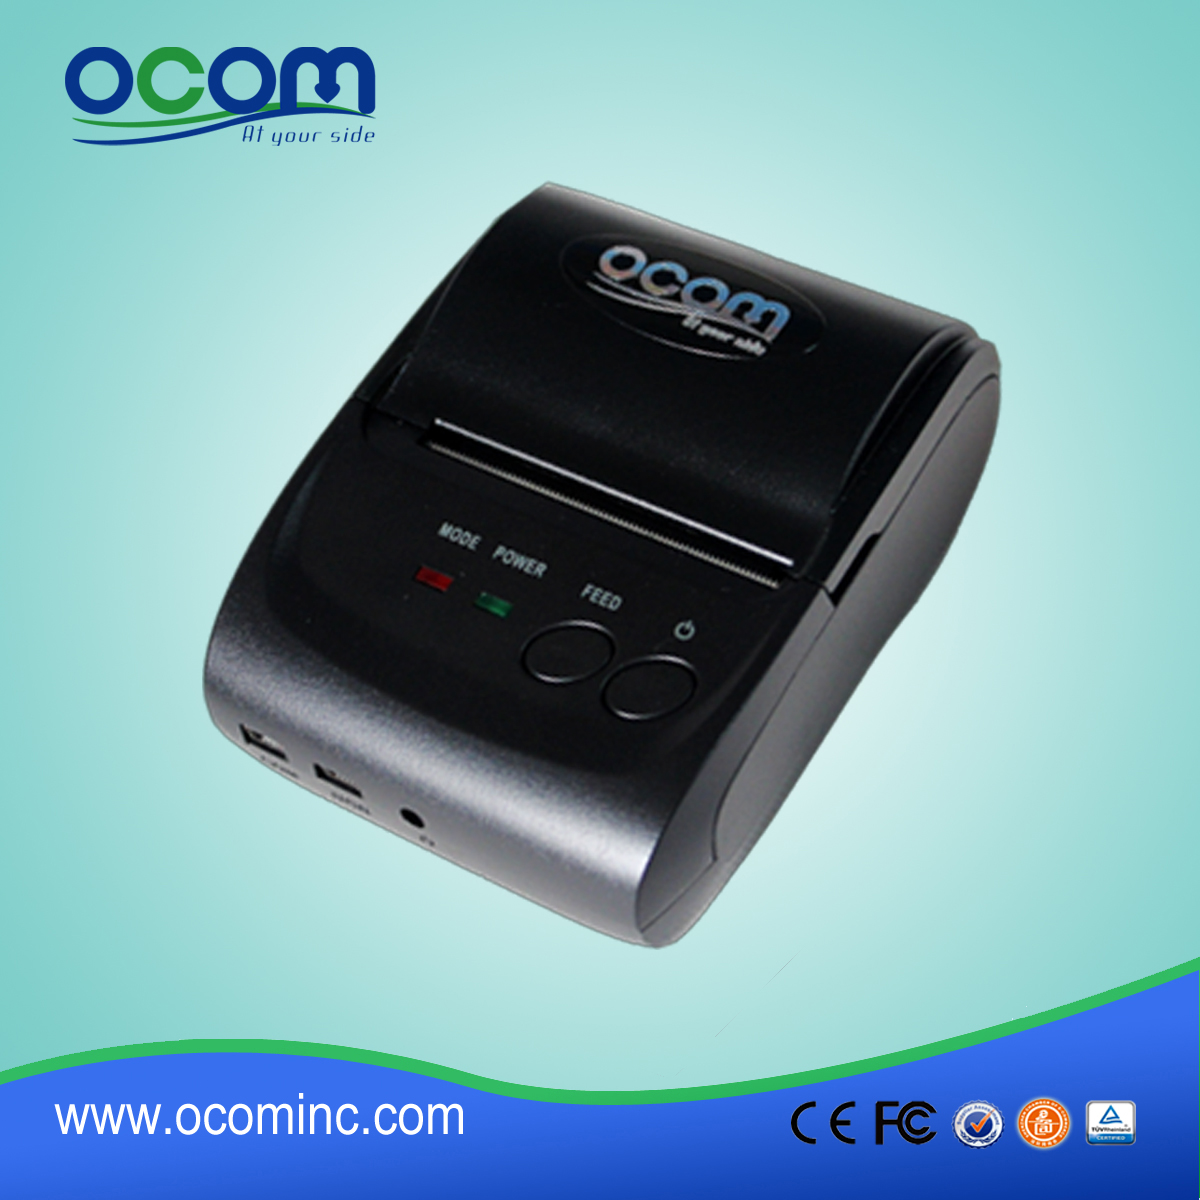 OCPP-M05: portatili prezzo stampante termica, stampatore di posizione stampante termica Android